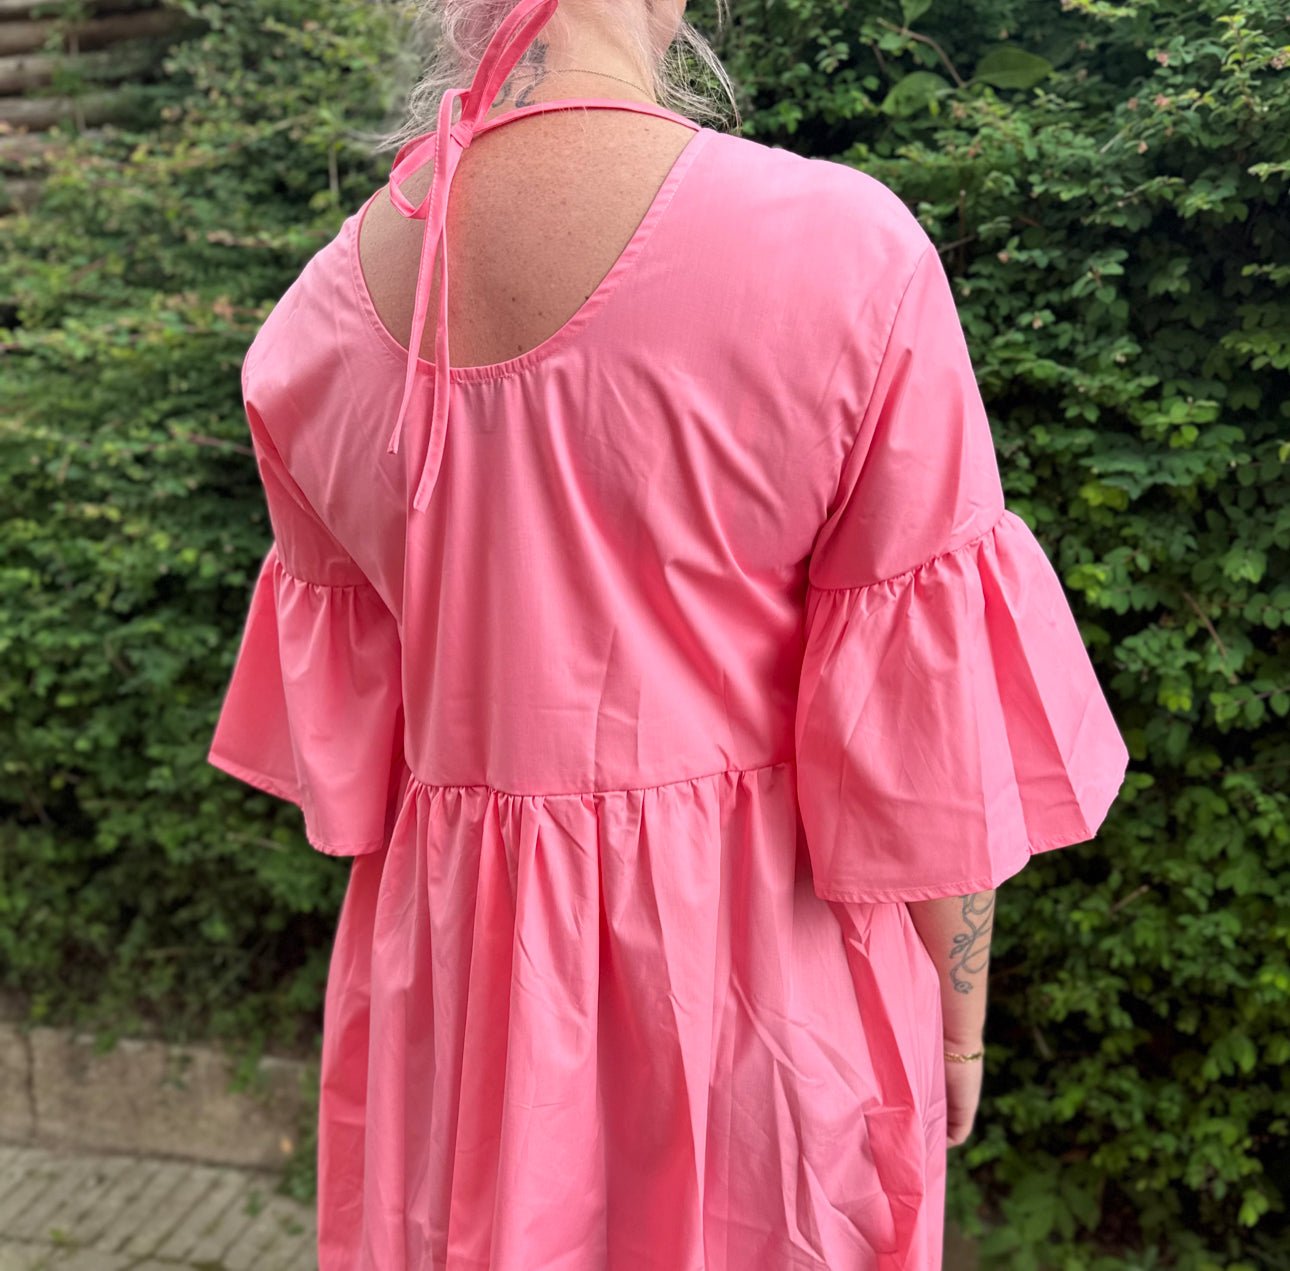 Noella - Adaleide kjole - pink - Merle og Wilde